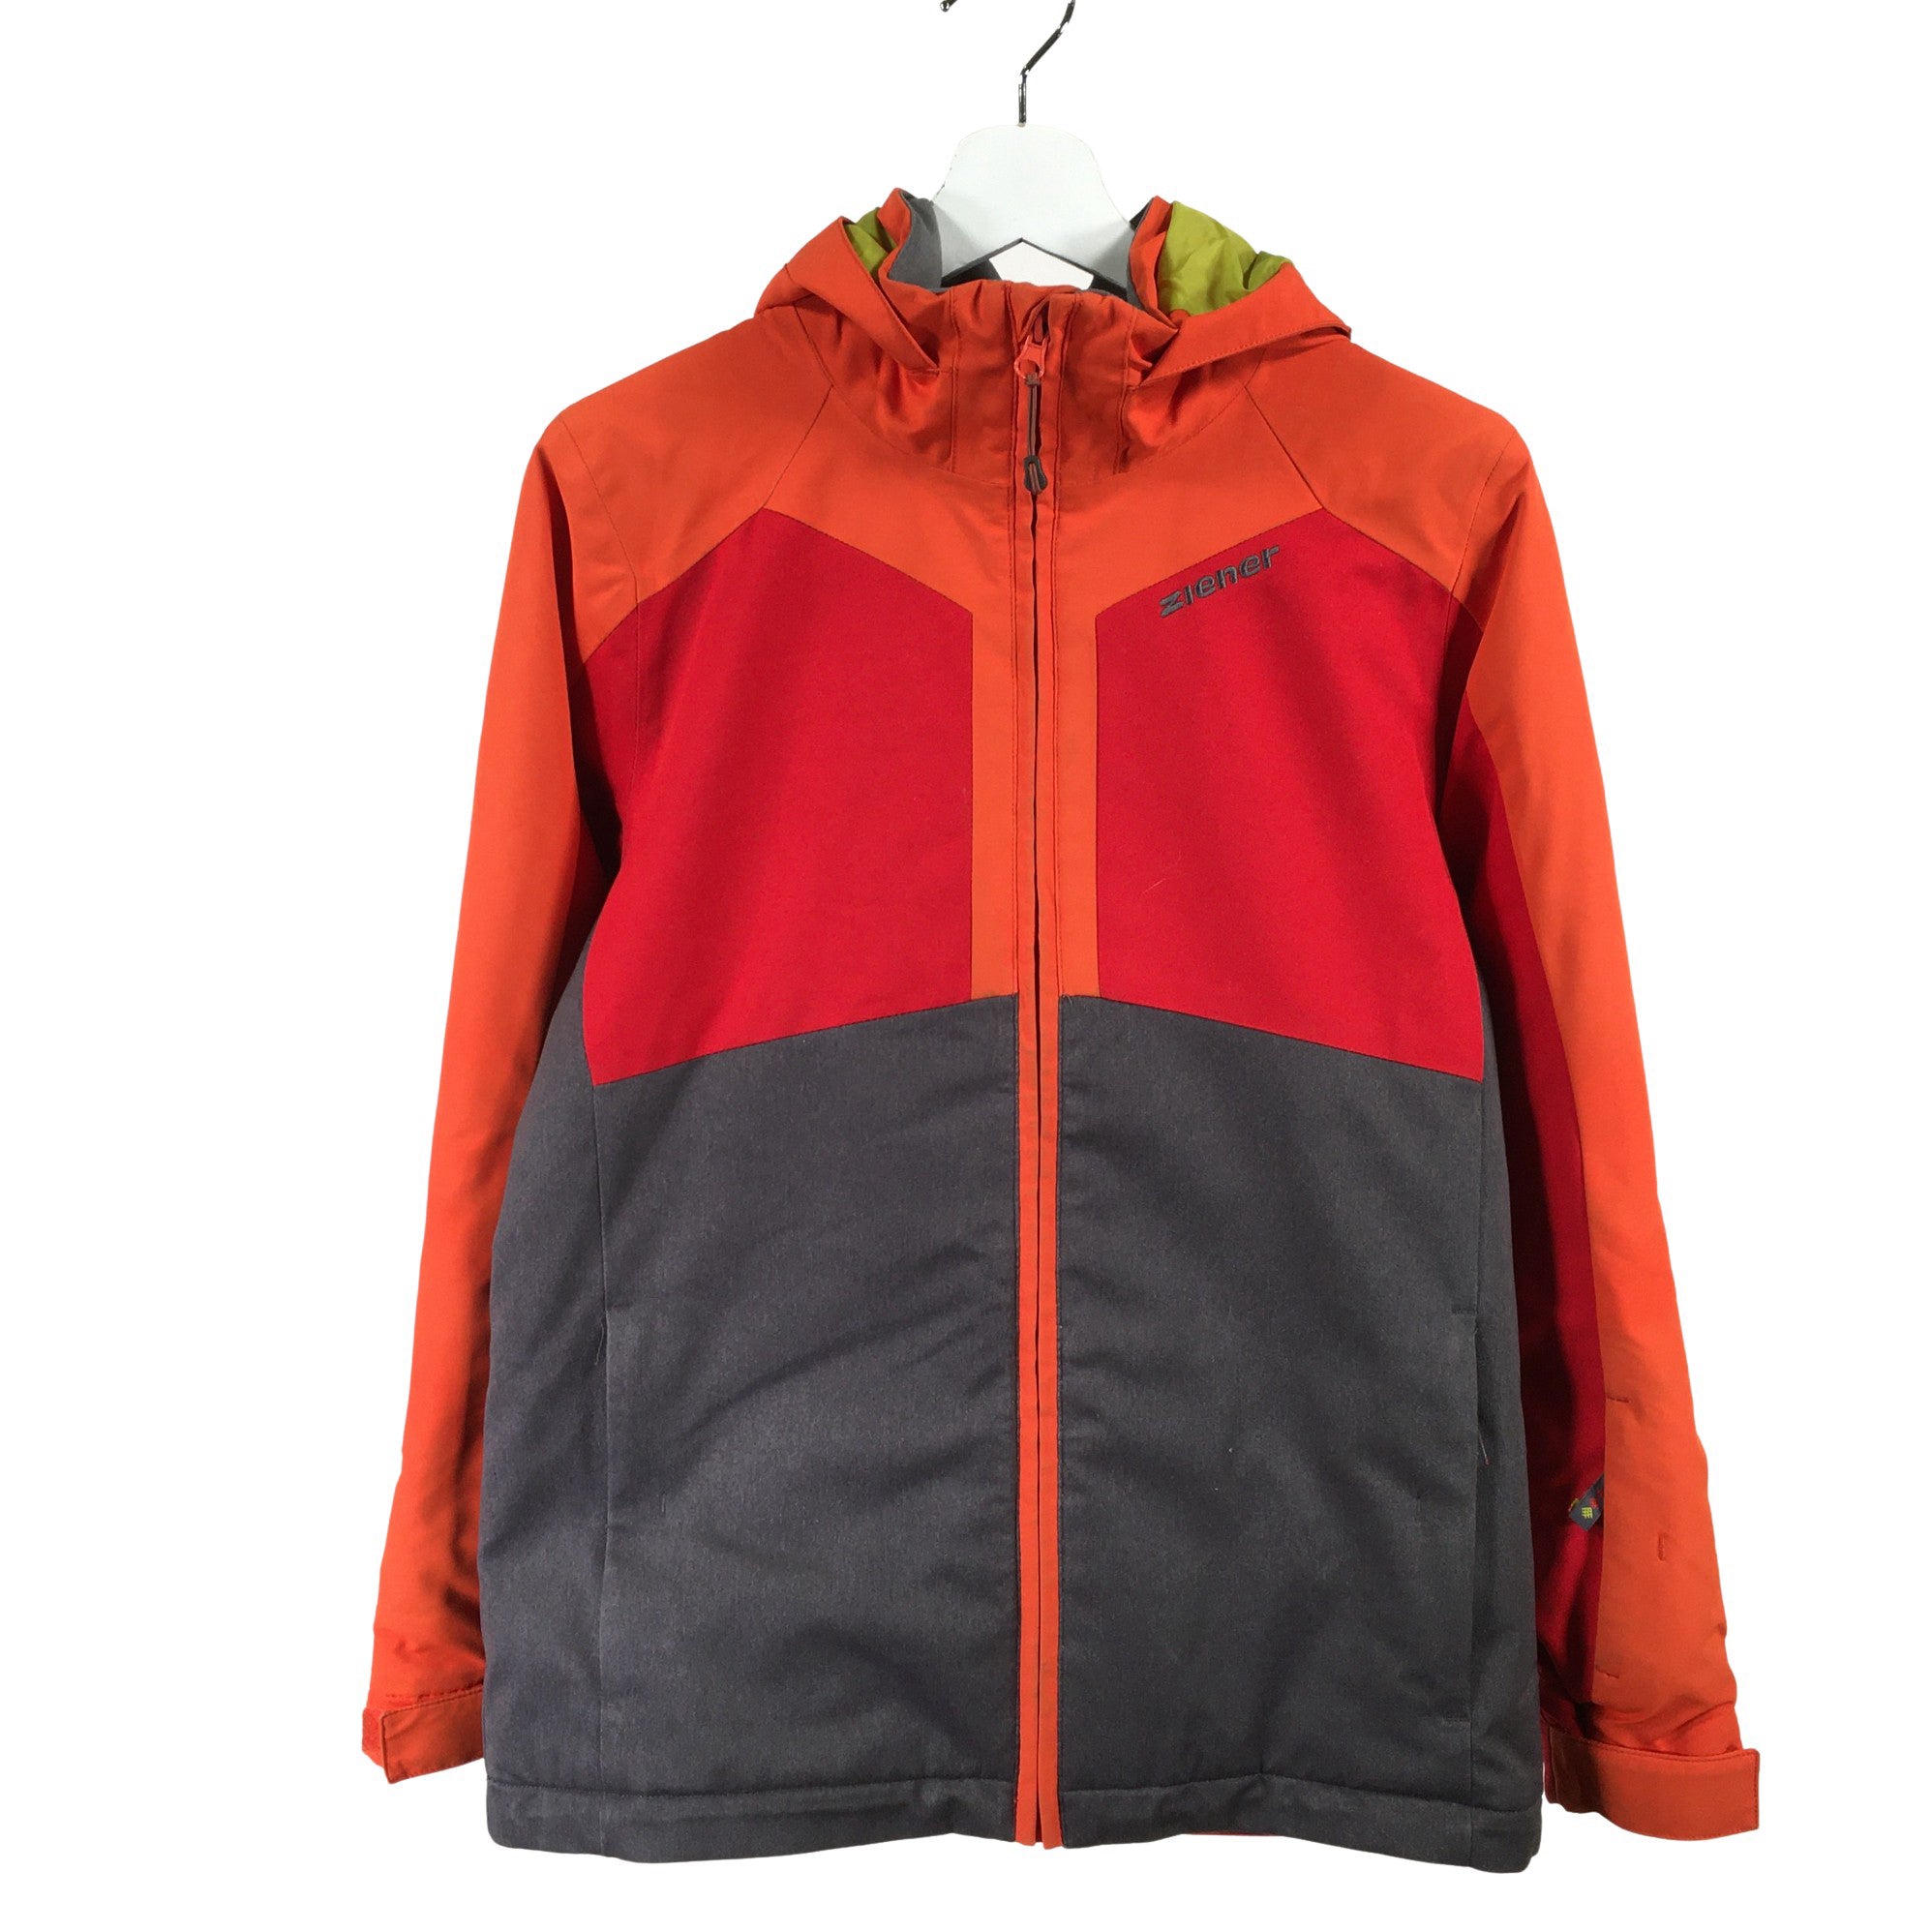 De neiging hebben spier Concurrenten Unisex Ziener Winter jacket, size 158 - 164 (Red) | Emmy